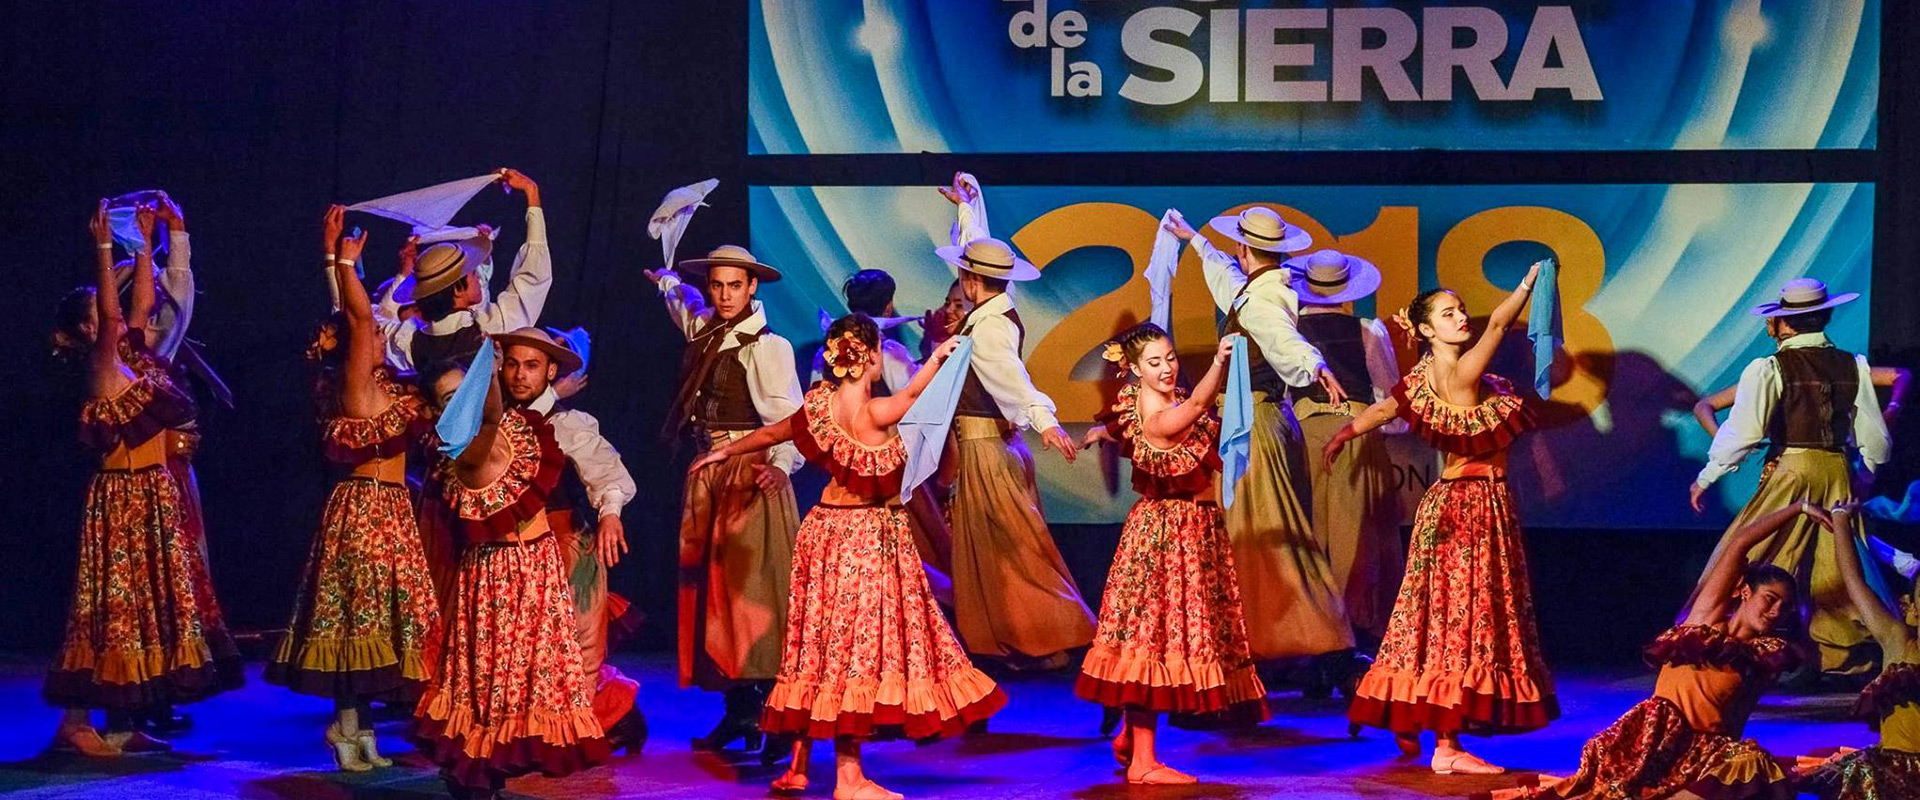 Ganadores 2019 - Festival de la Sierra